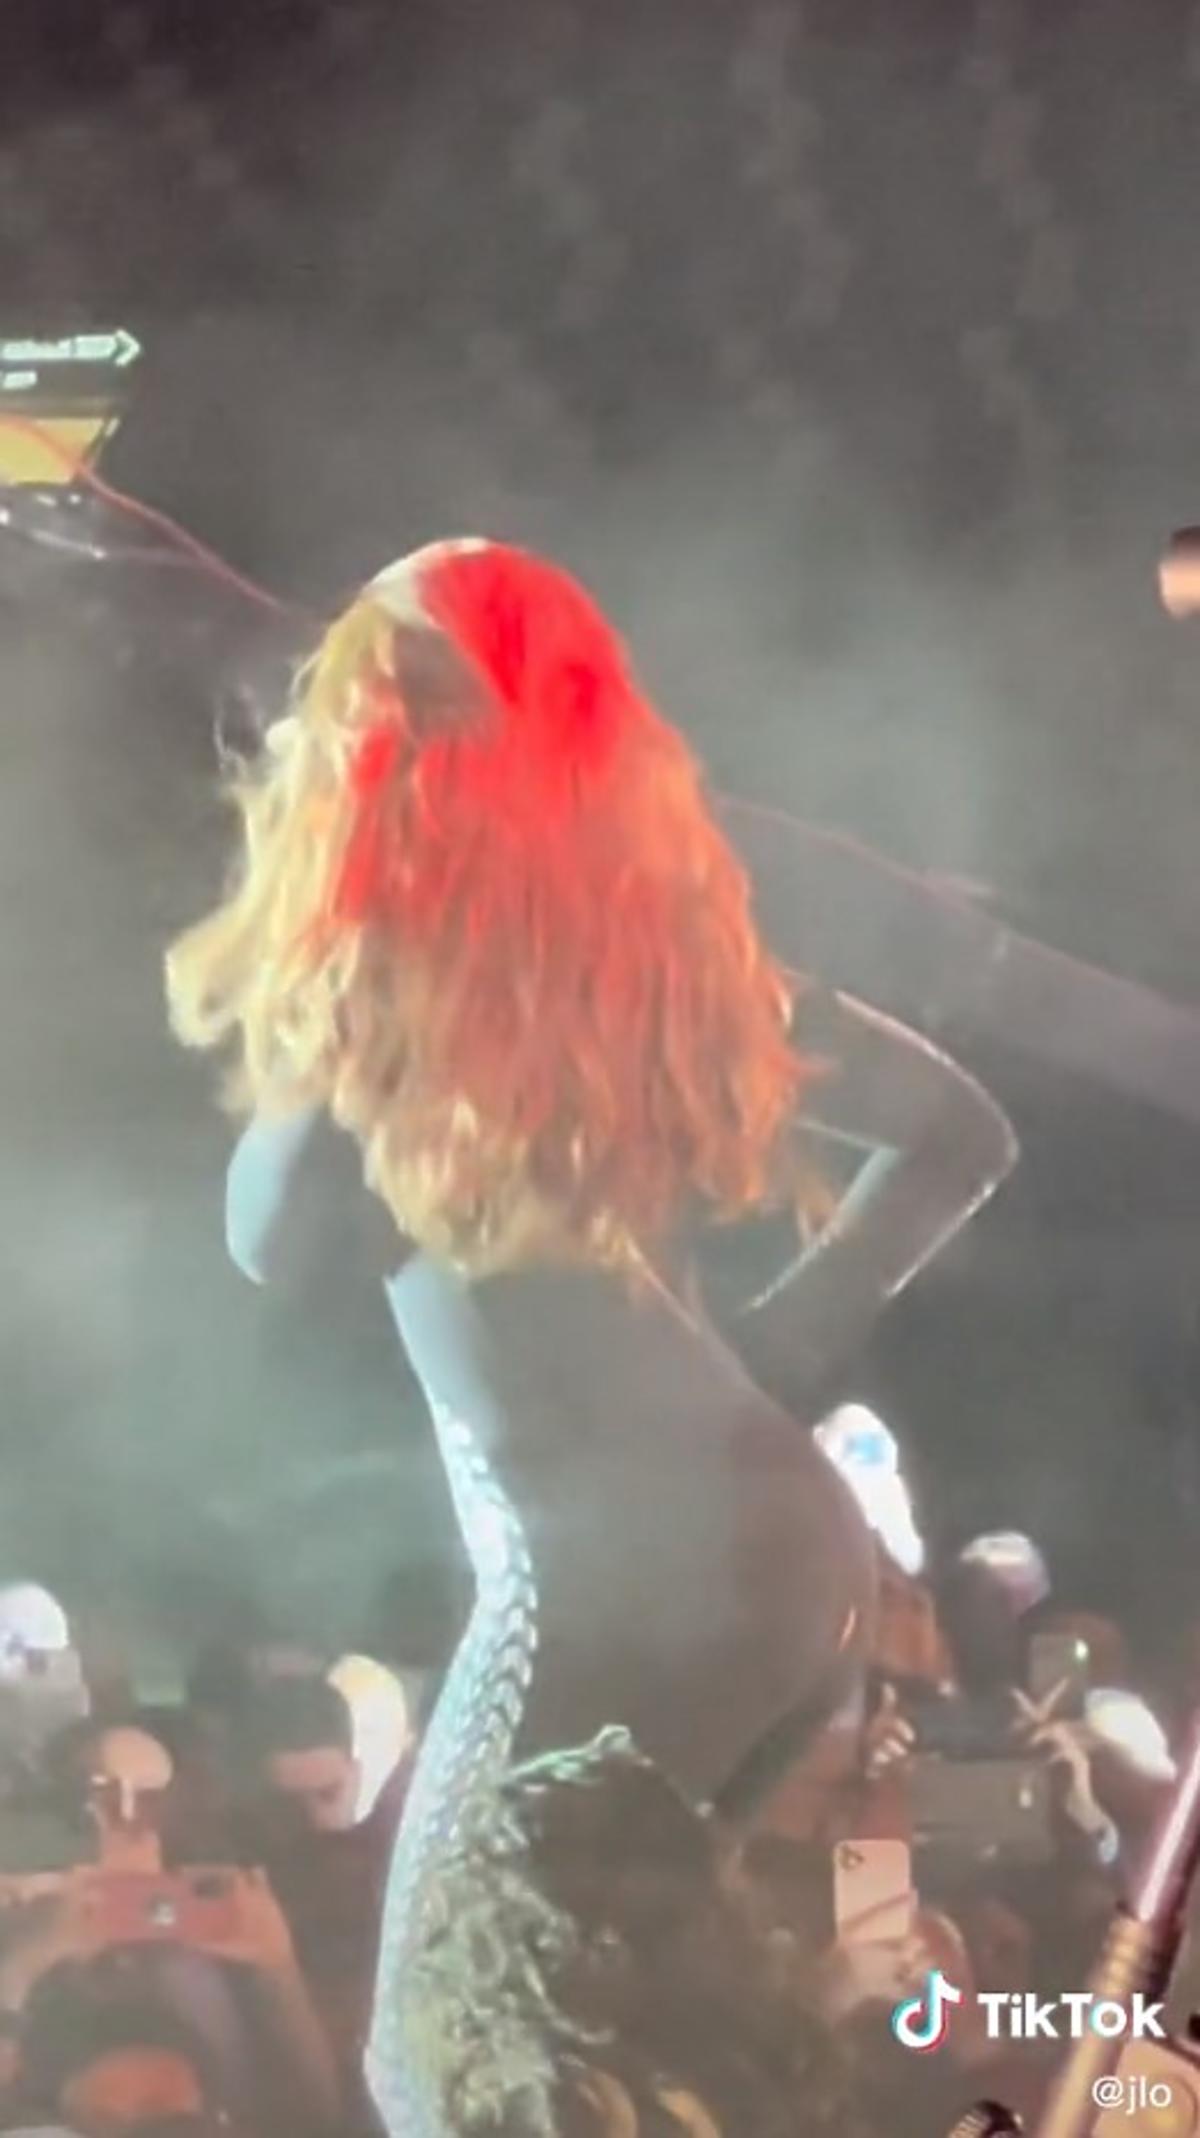 Podczas koncertu Jennifer Lopez zaliczyła wpadkę. Pękł jej kostium na pupie